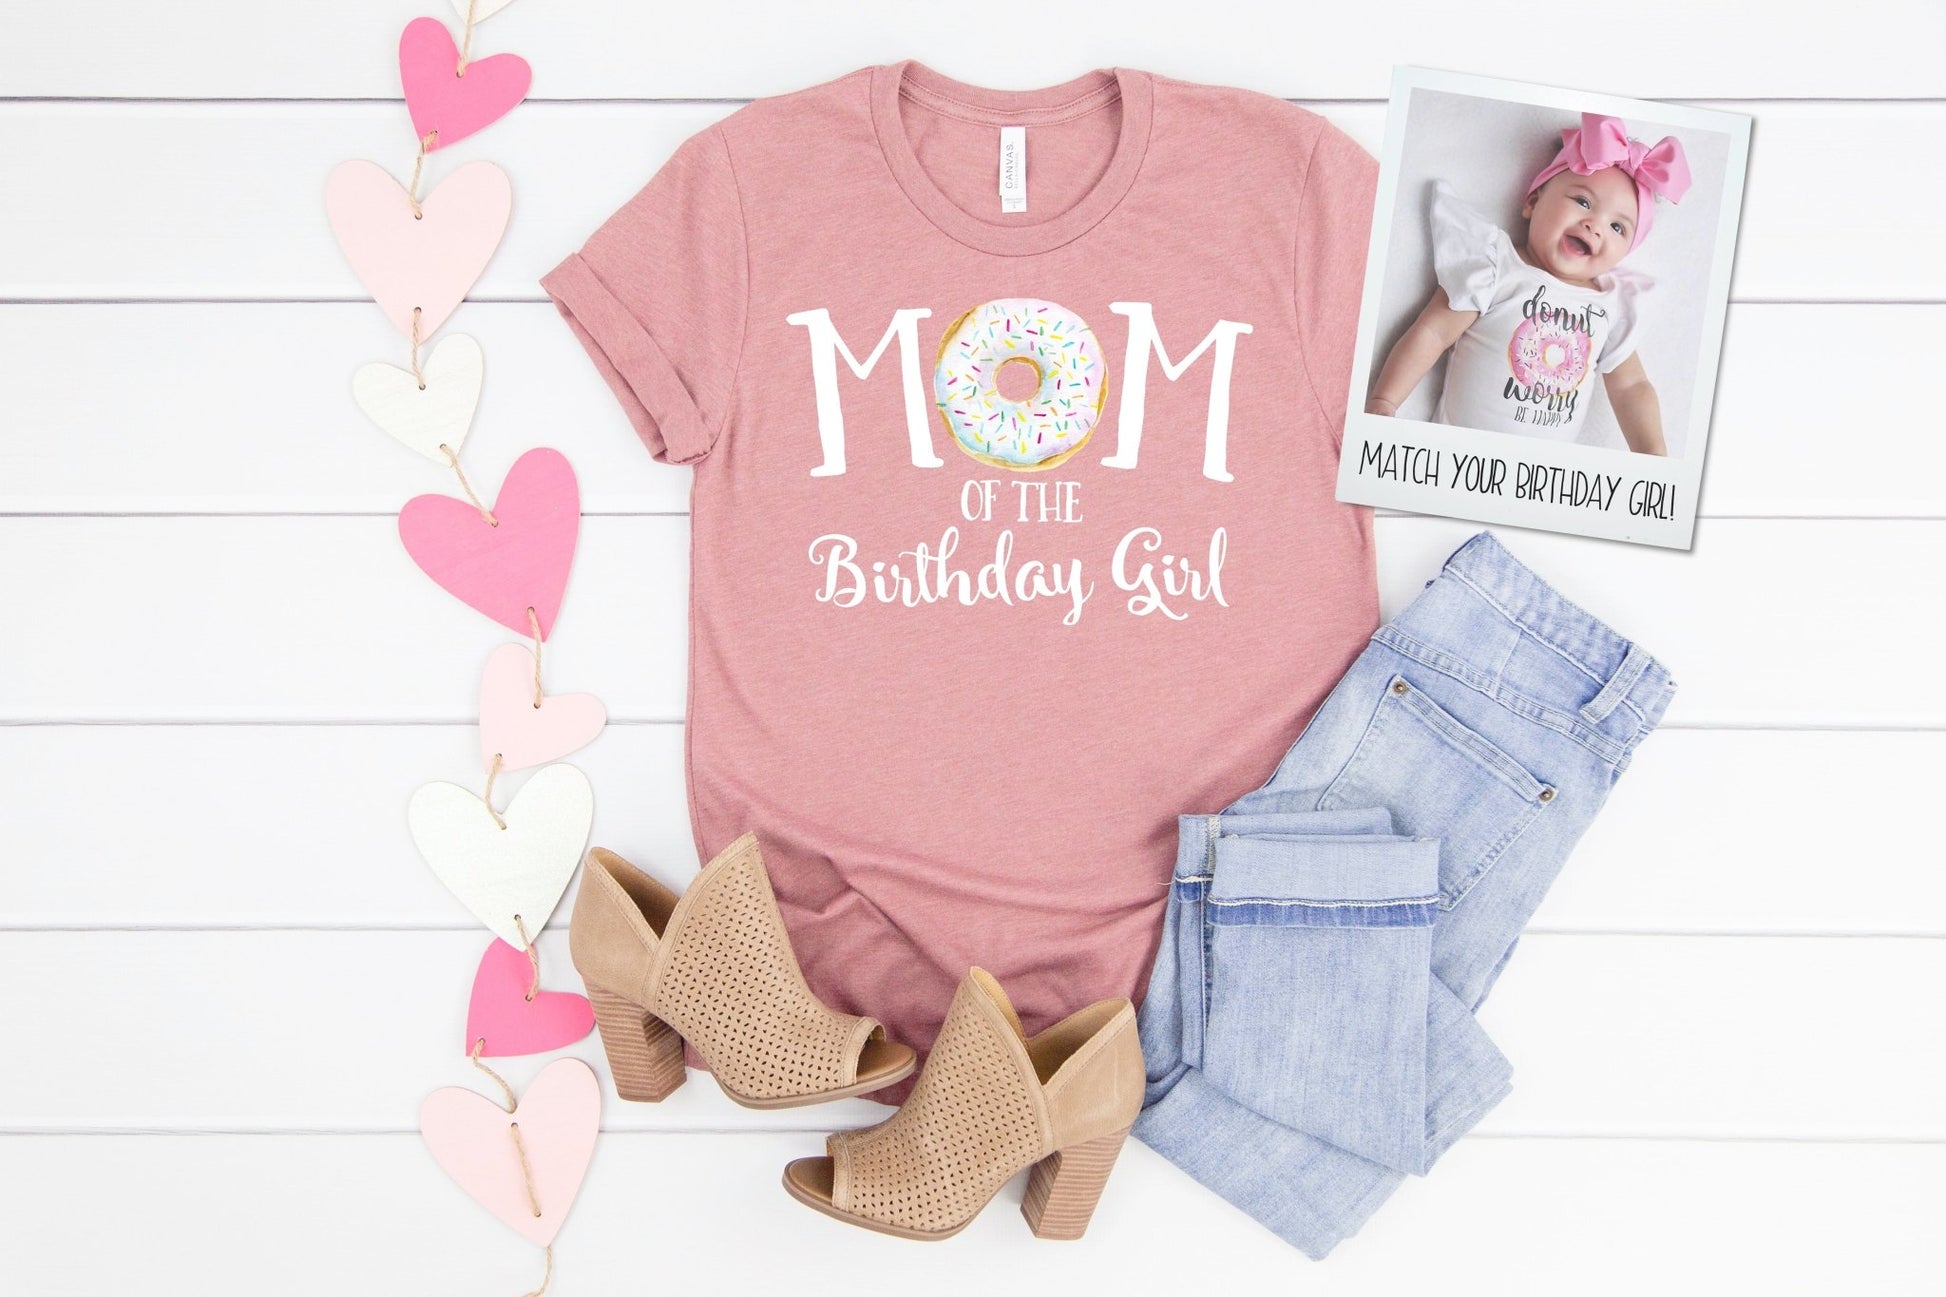 https://squishycheeks.com/cdn/shop/products/donut-mom-of-the-birthday-girl-matching-shirt-845884.jpg?v=1673206862&width=1946